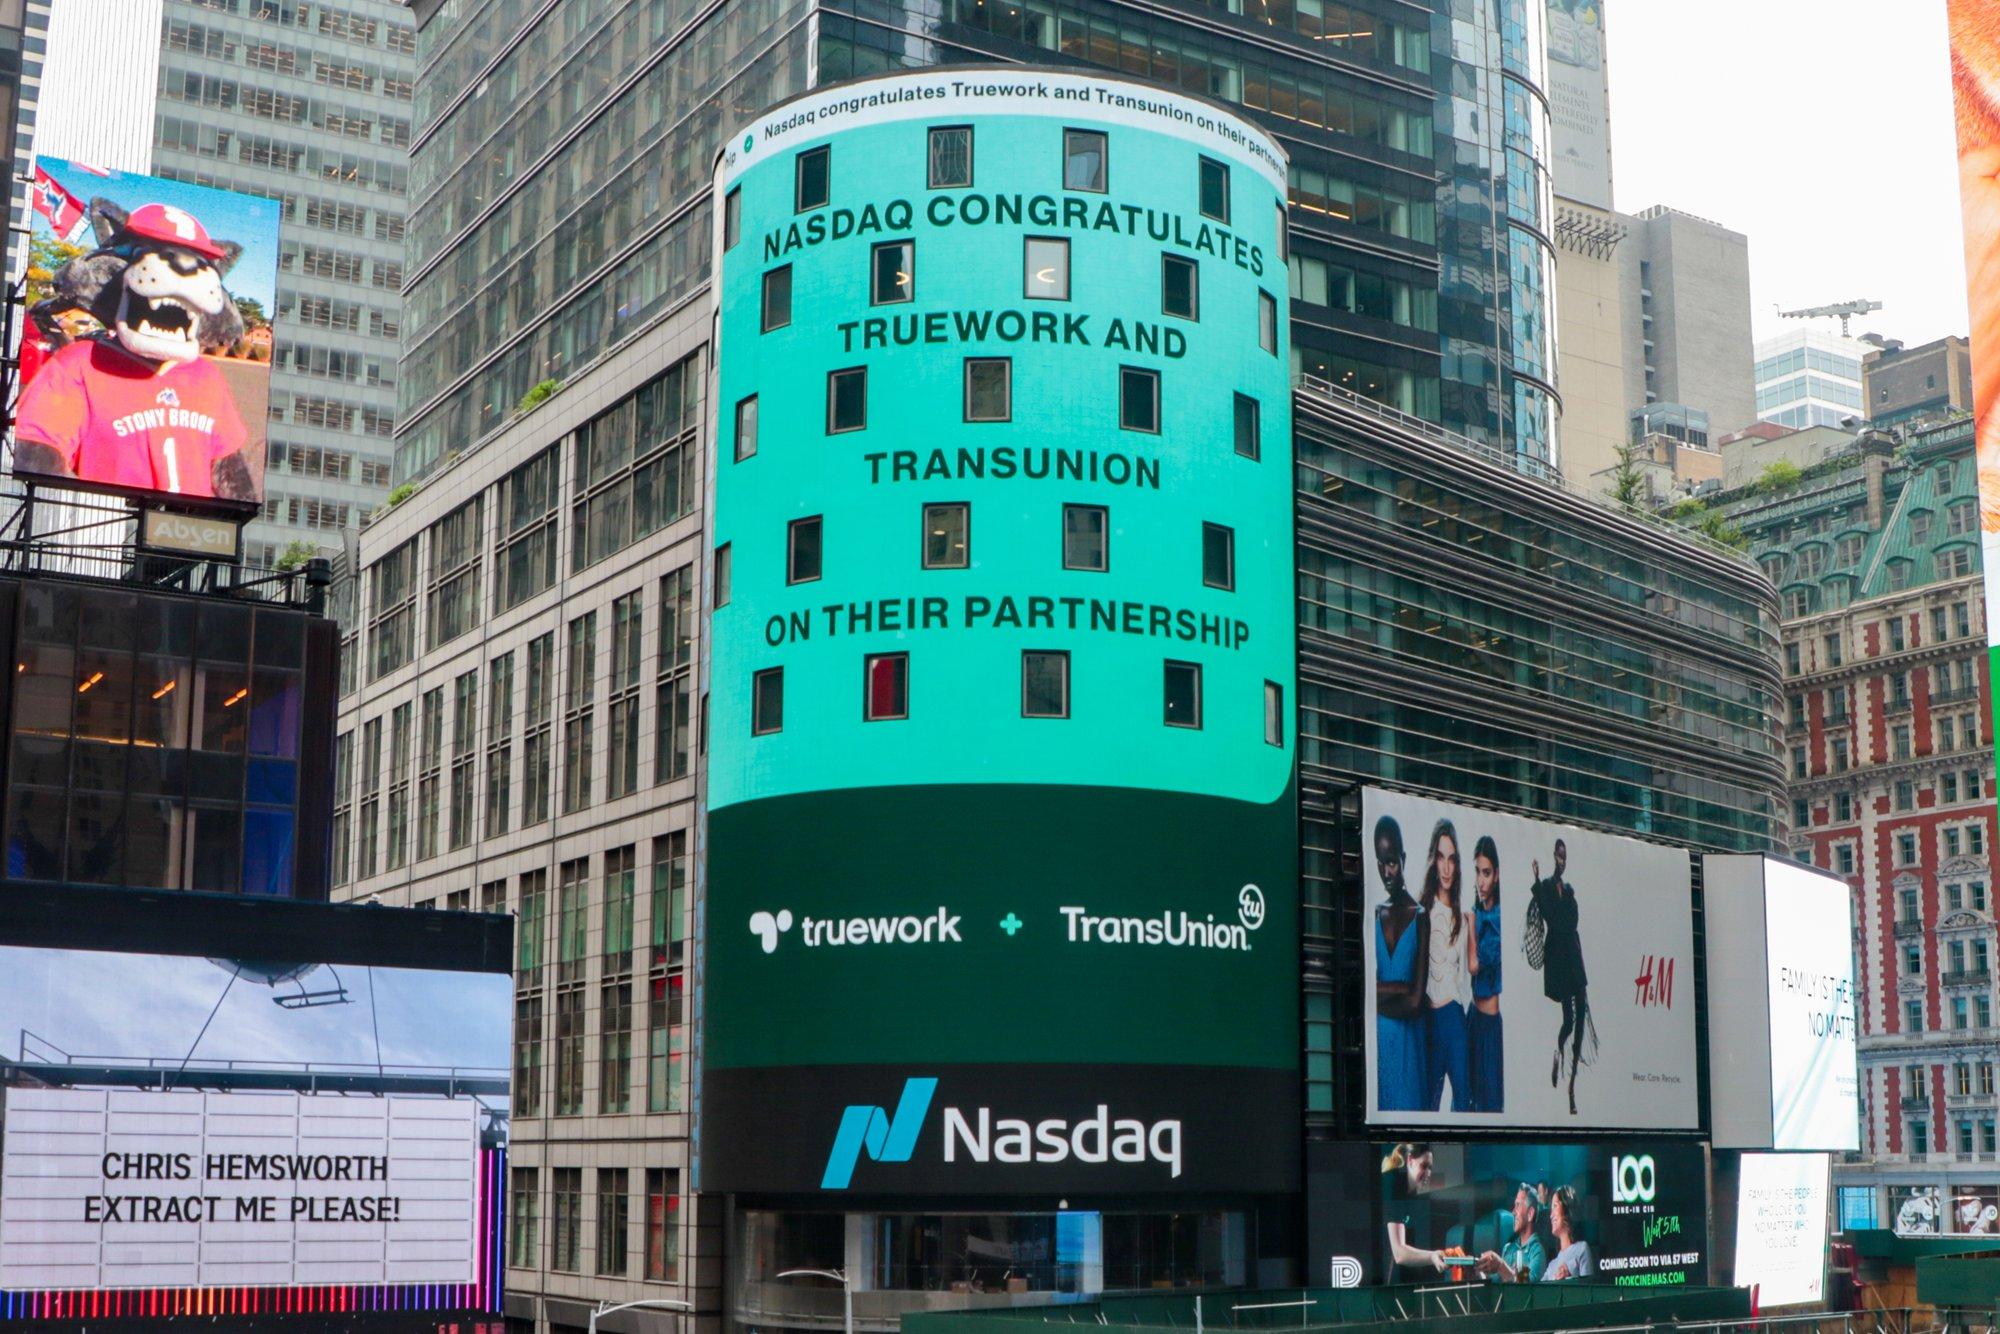 NASDAQ billboard with Truework and TransUnion